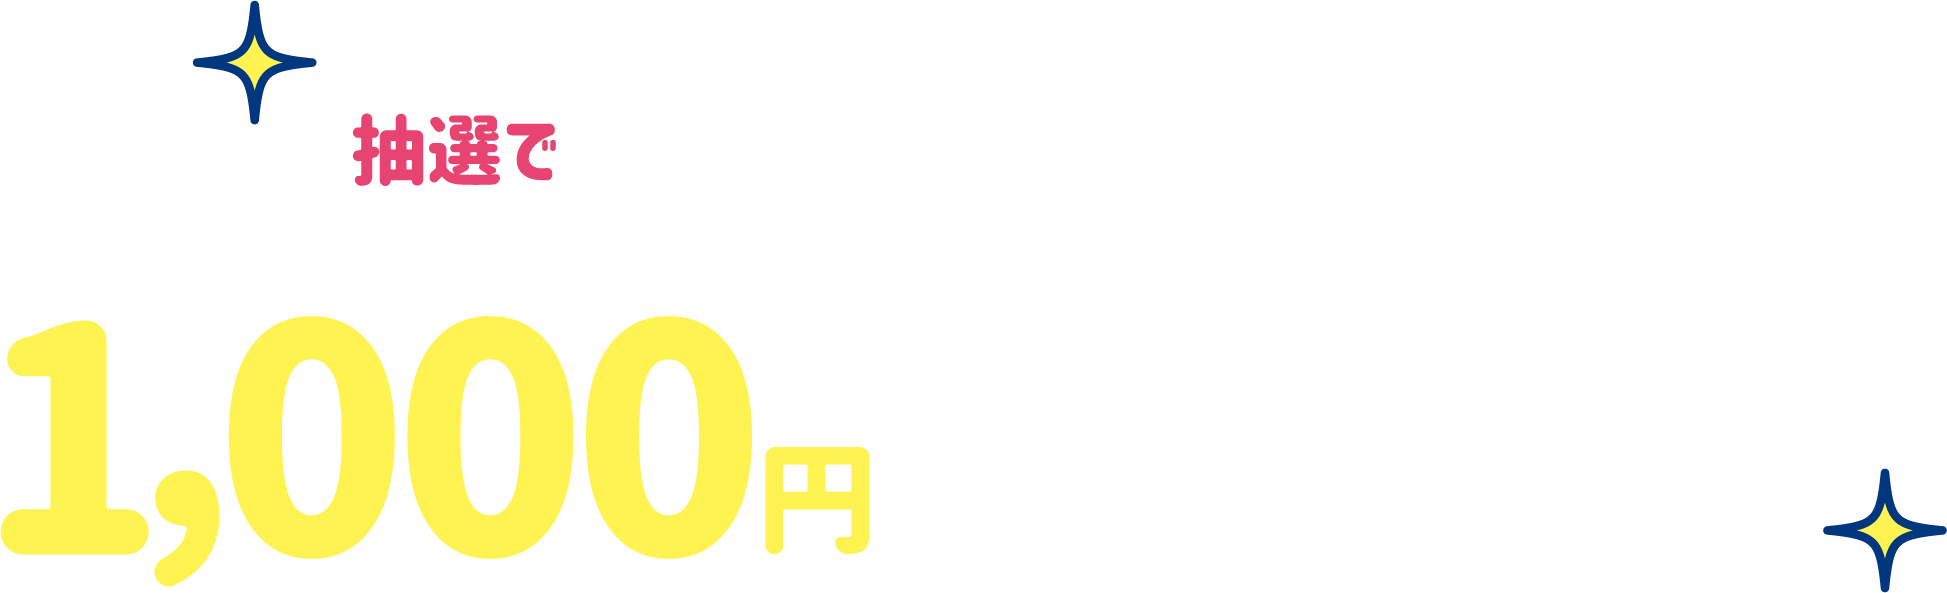 抽選で1000名さまに1000円プレゼント!